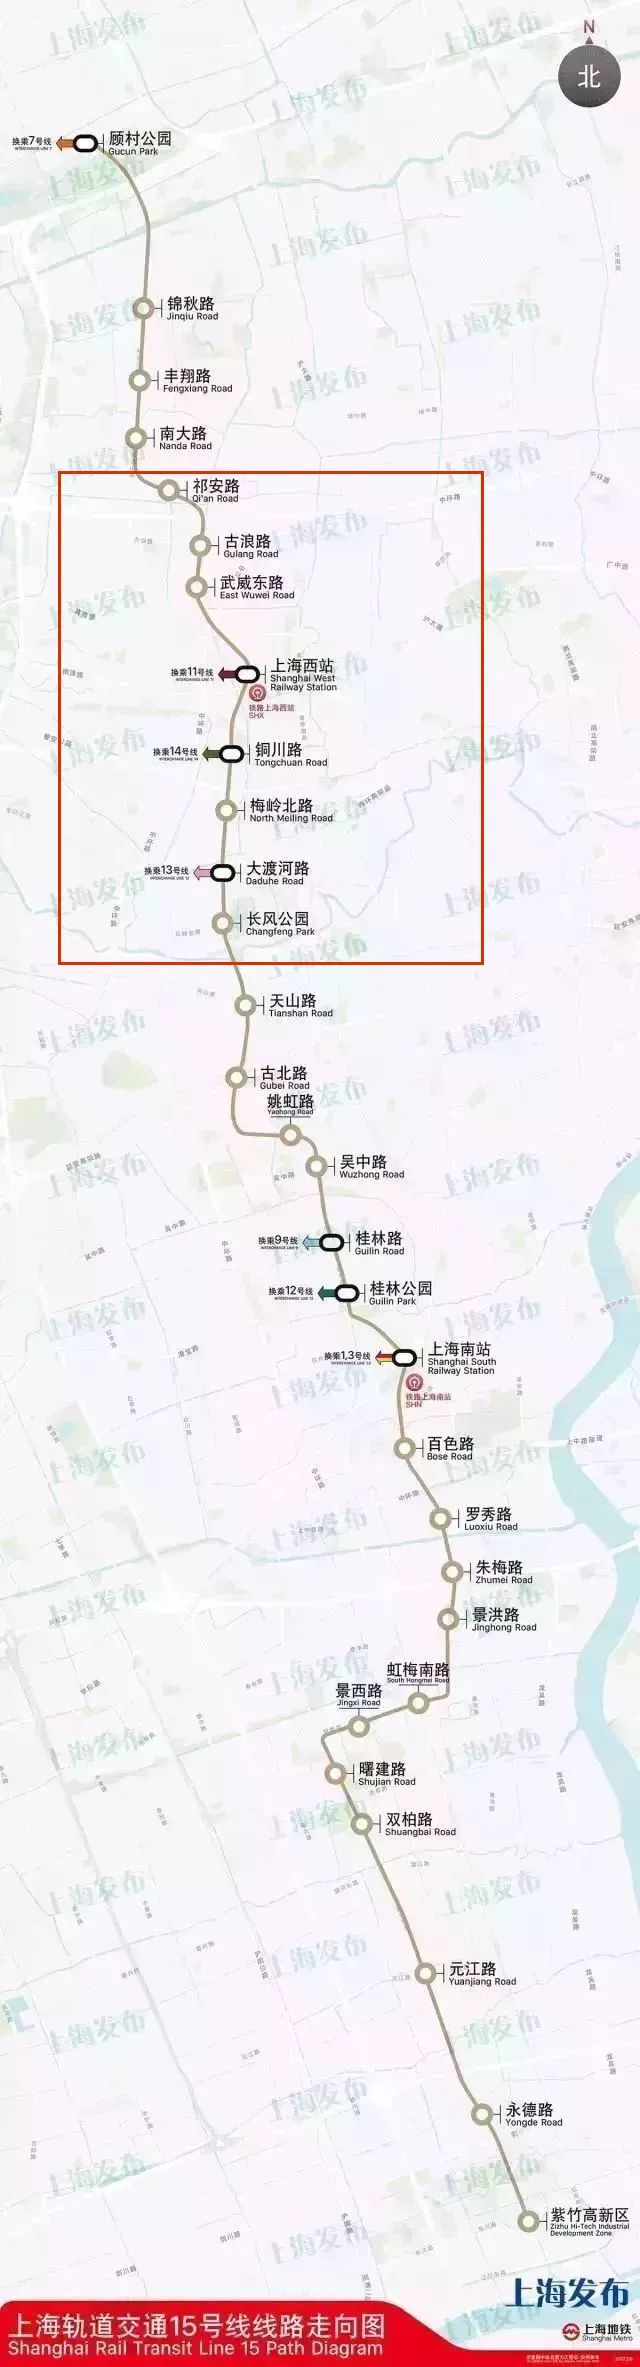 希望了解上海地铁15号线的详细规划及站点安排谢谢！（15号线地铁线路图上海）